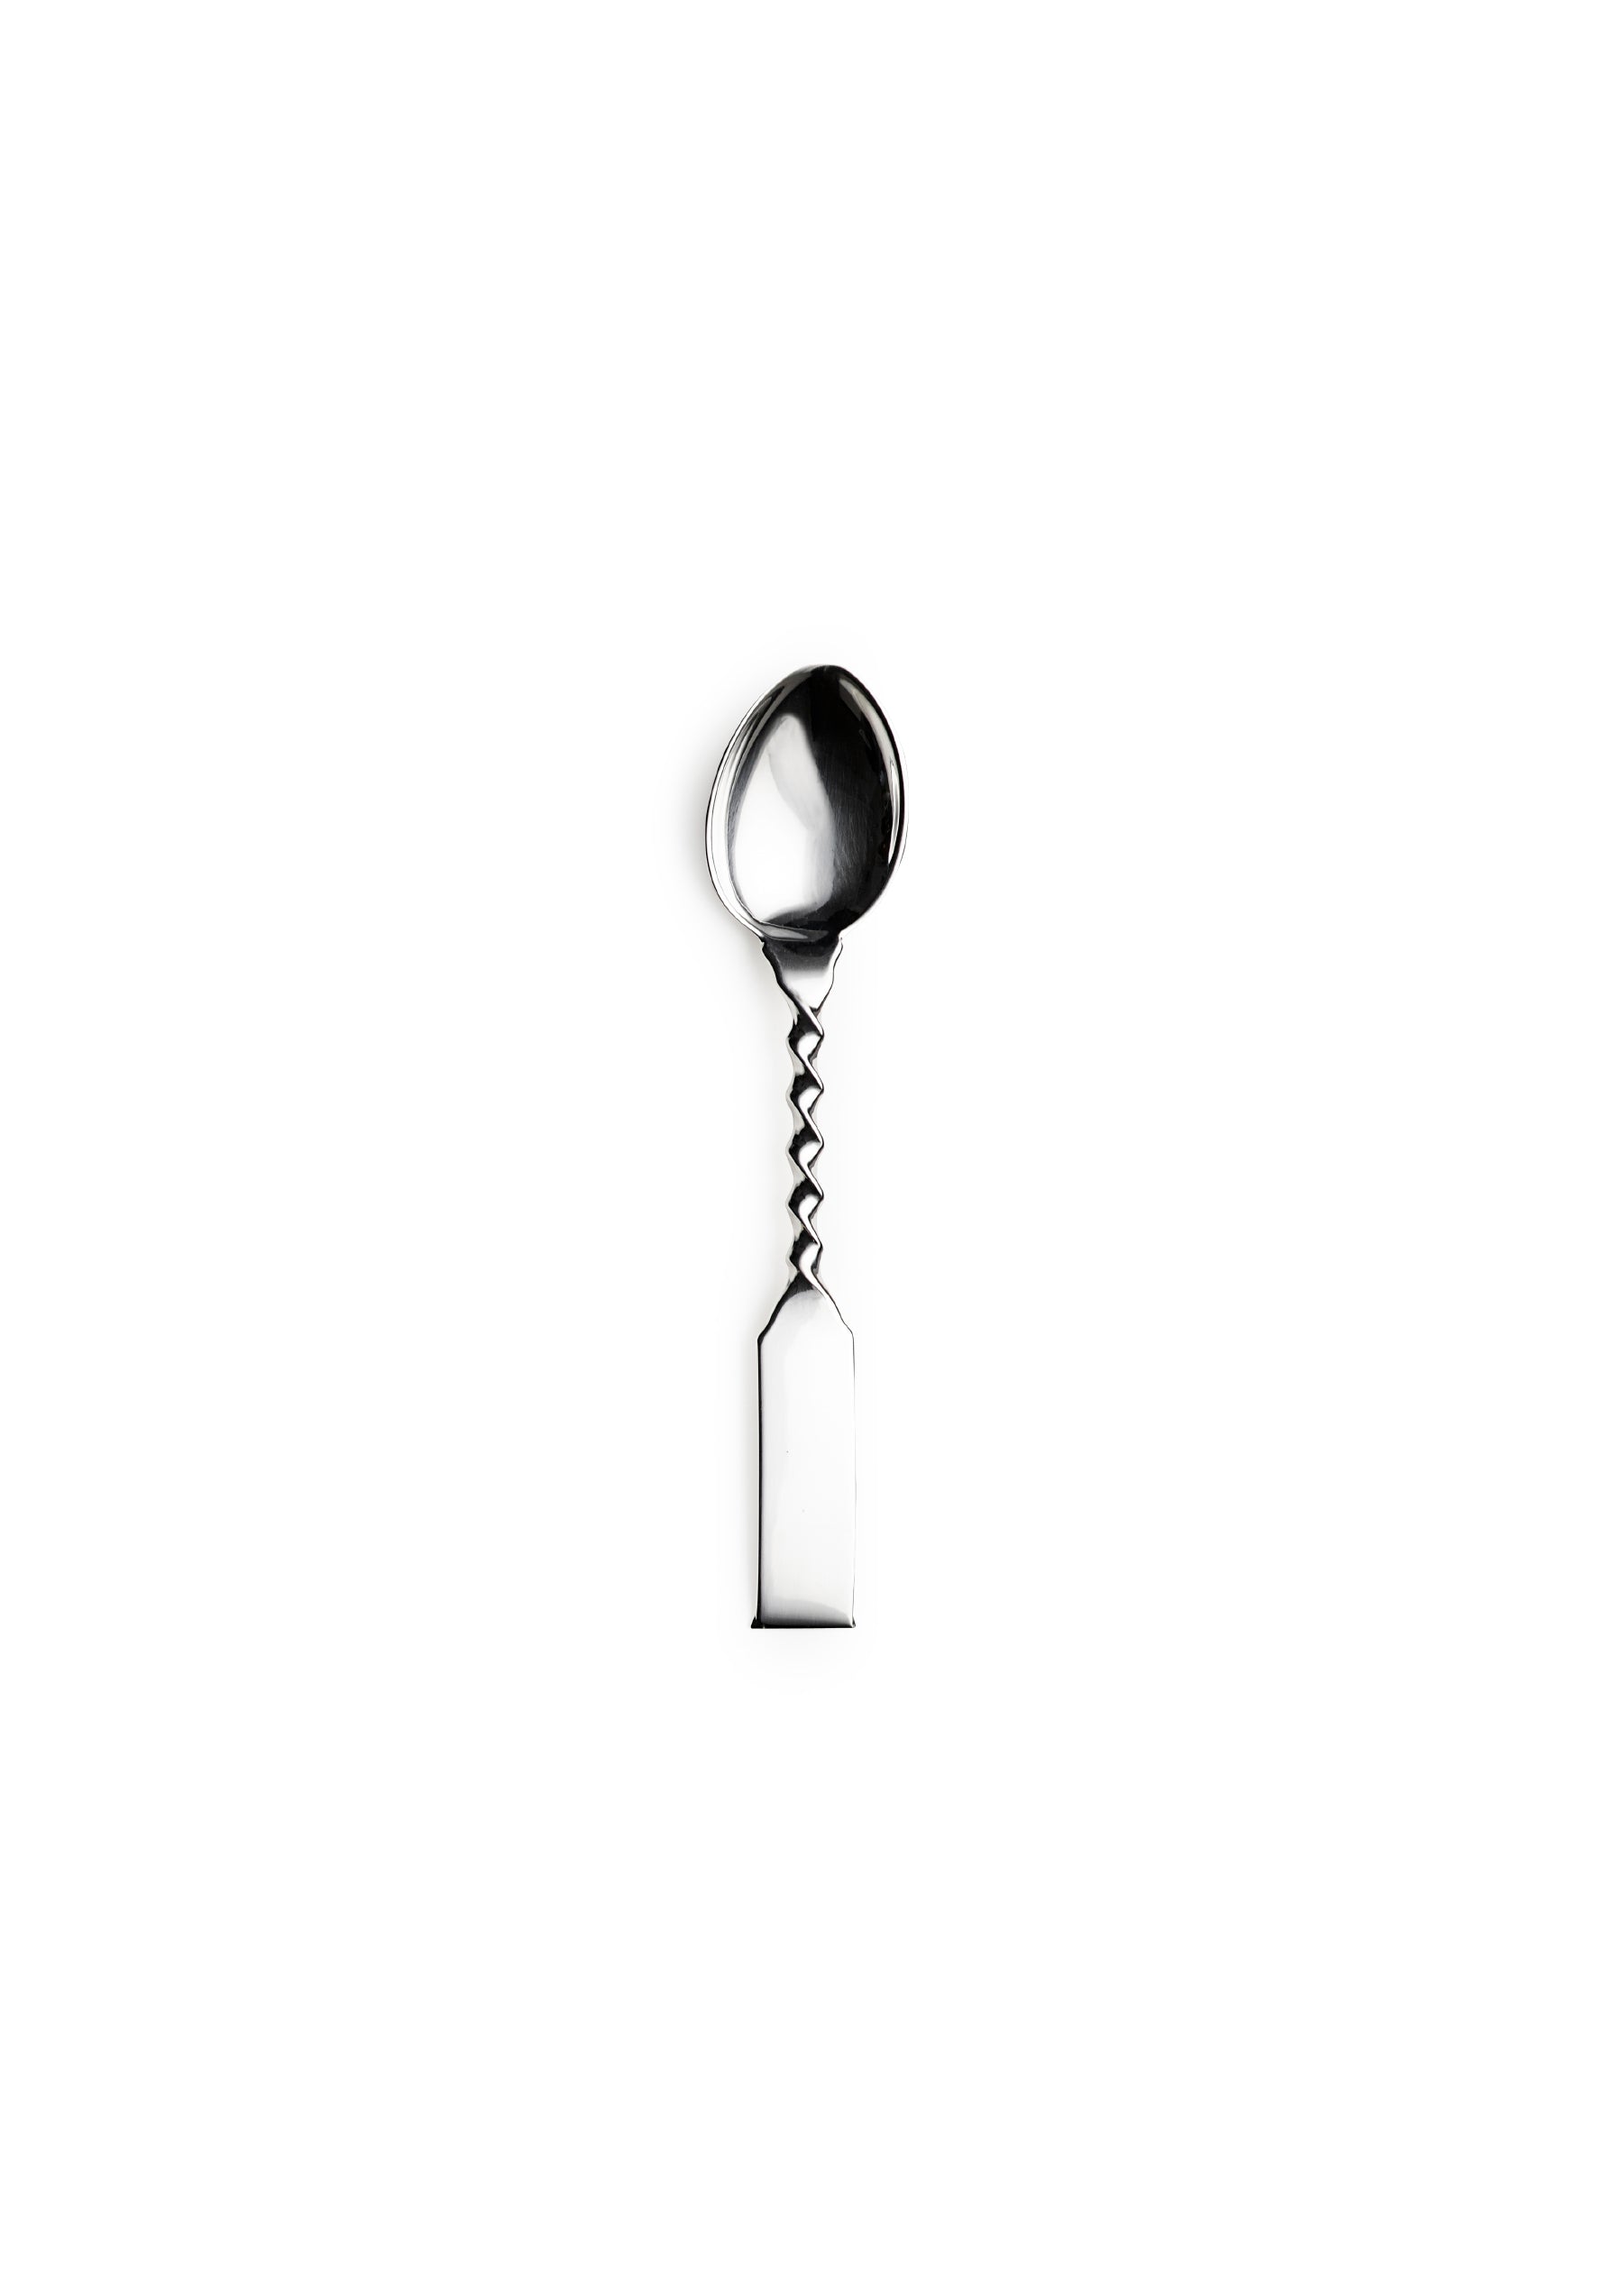 Twisted teaspoon